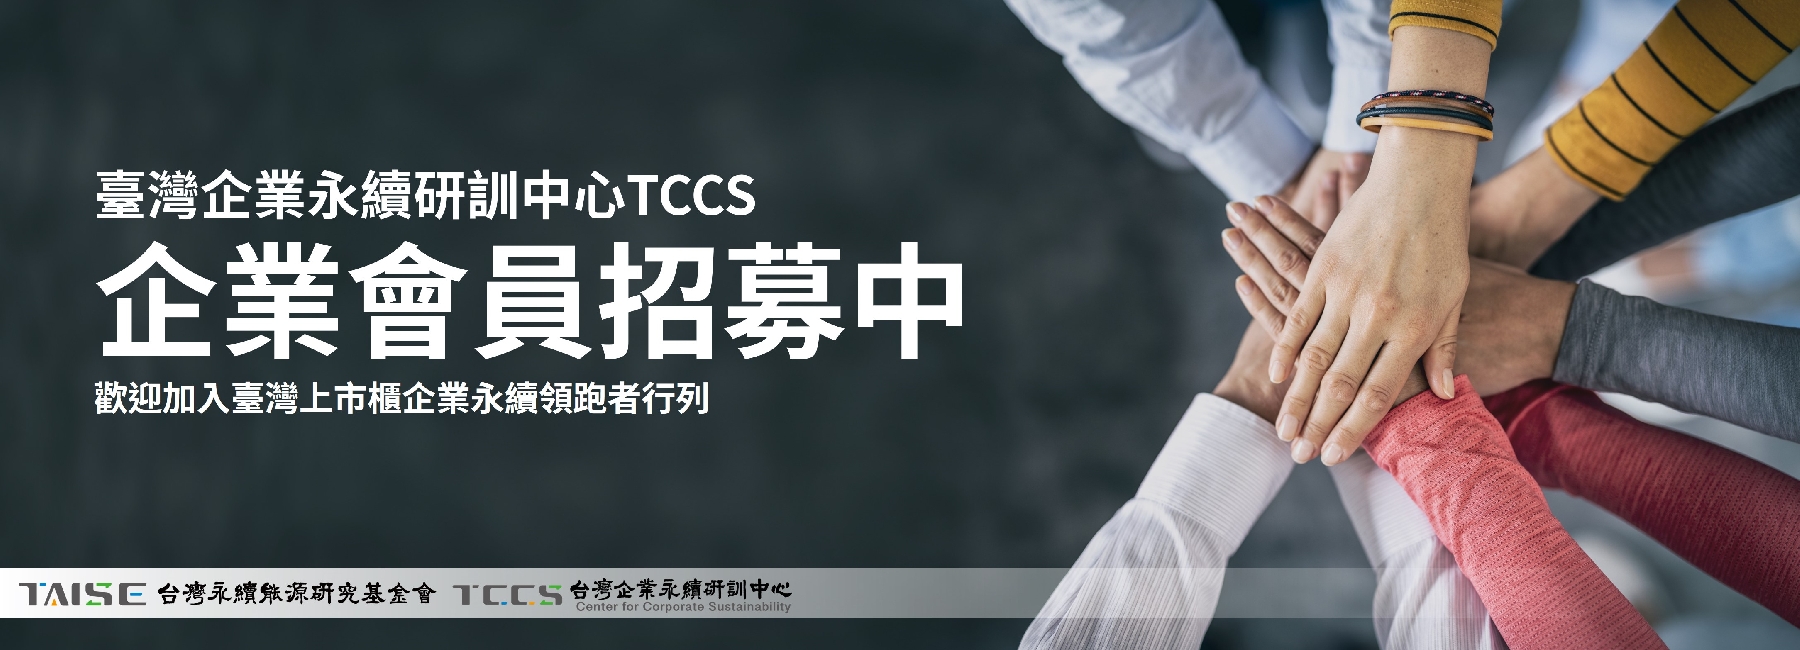 TCCS企業會員熱烈招募中